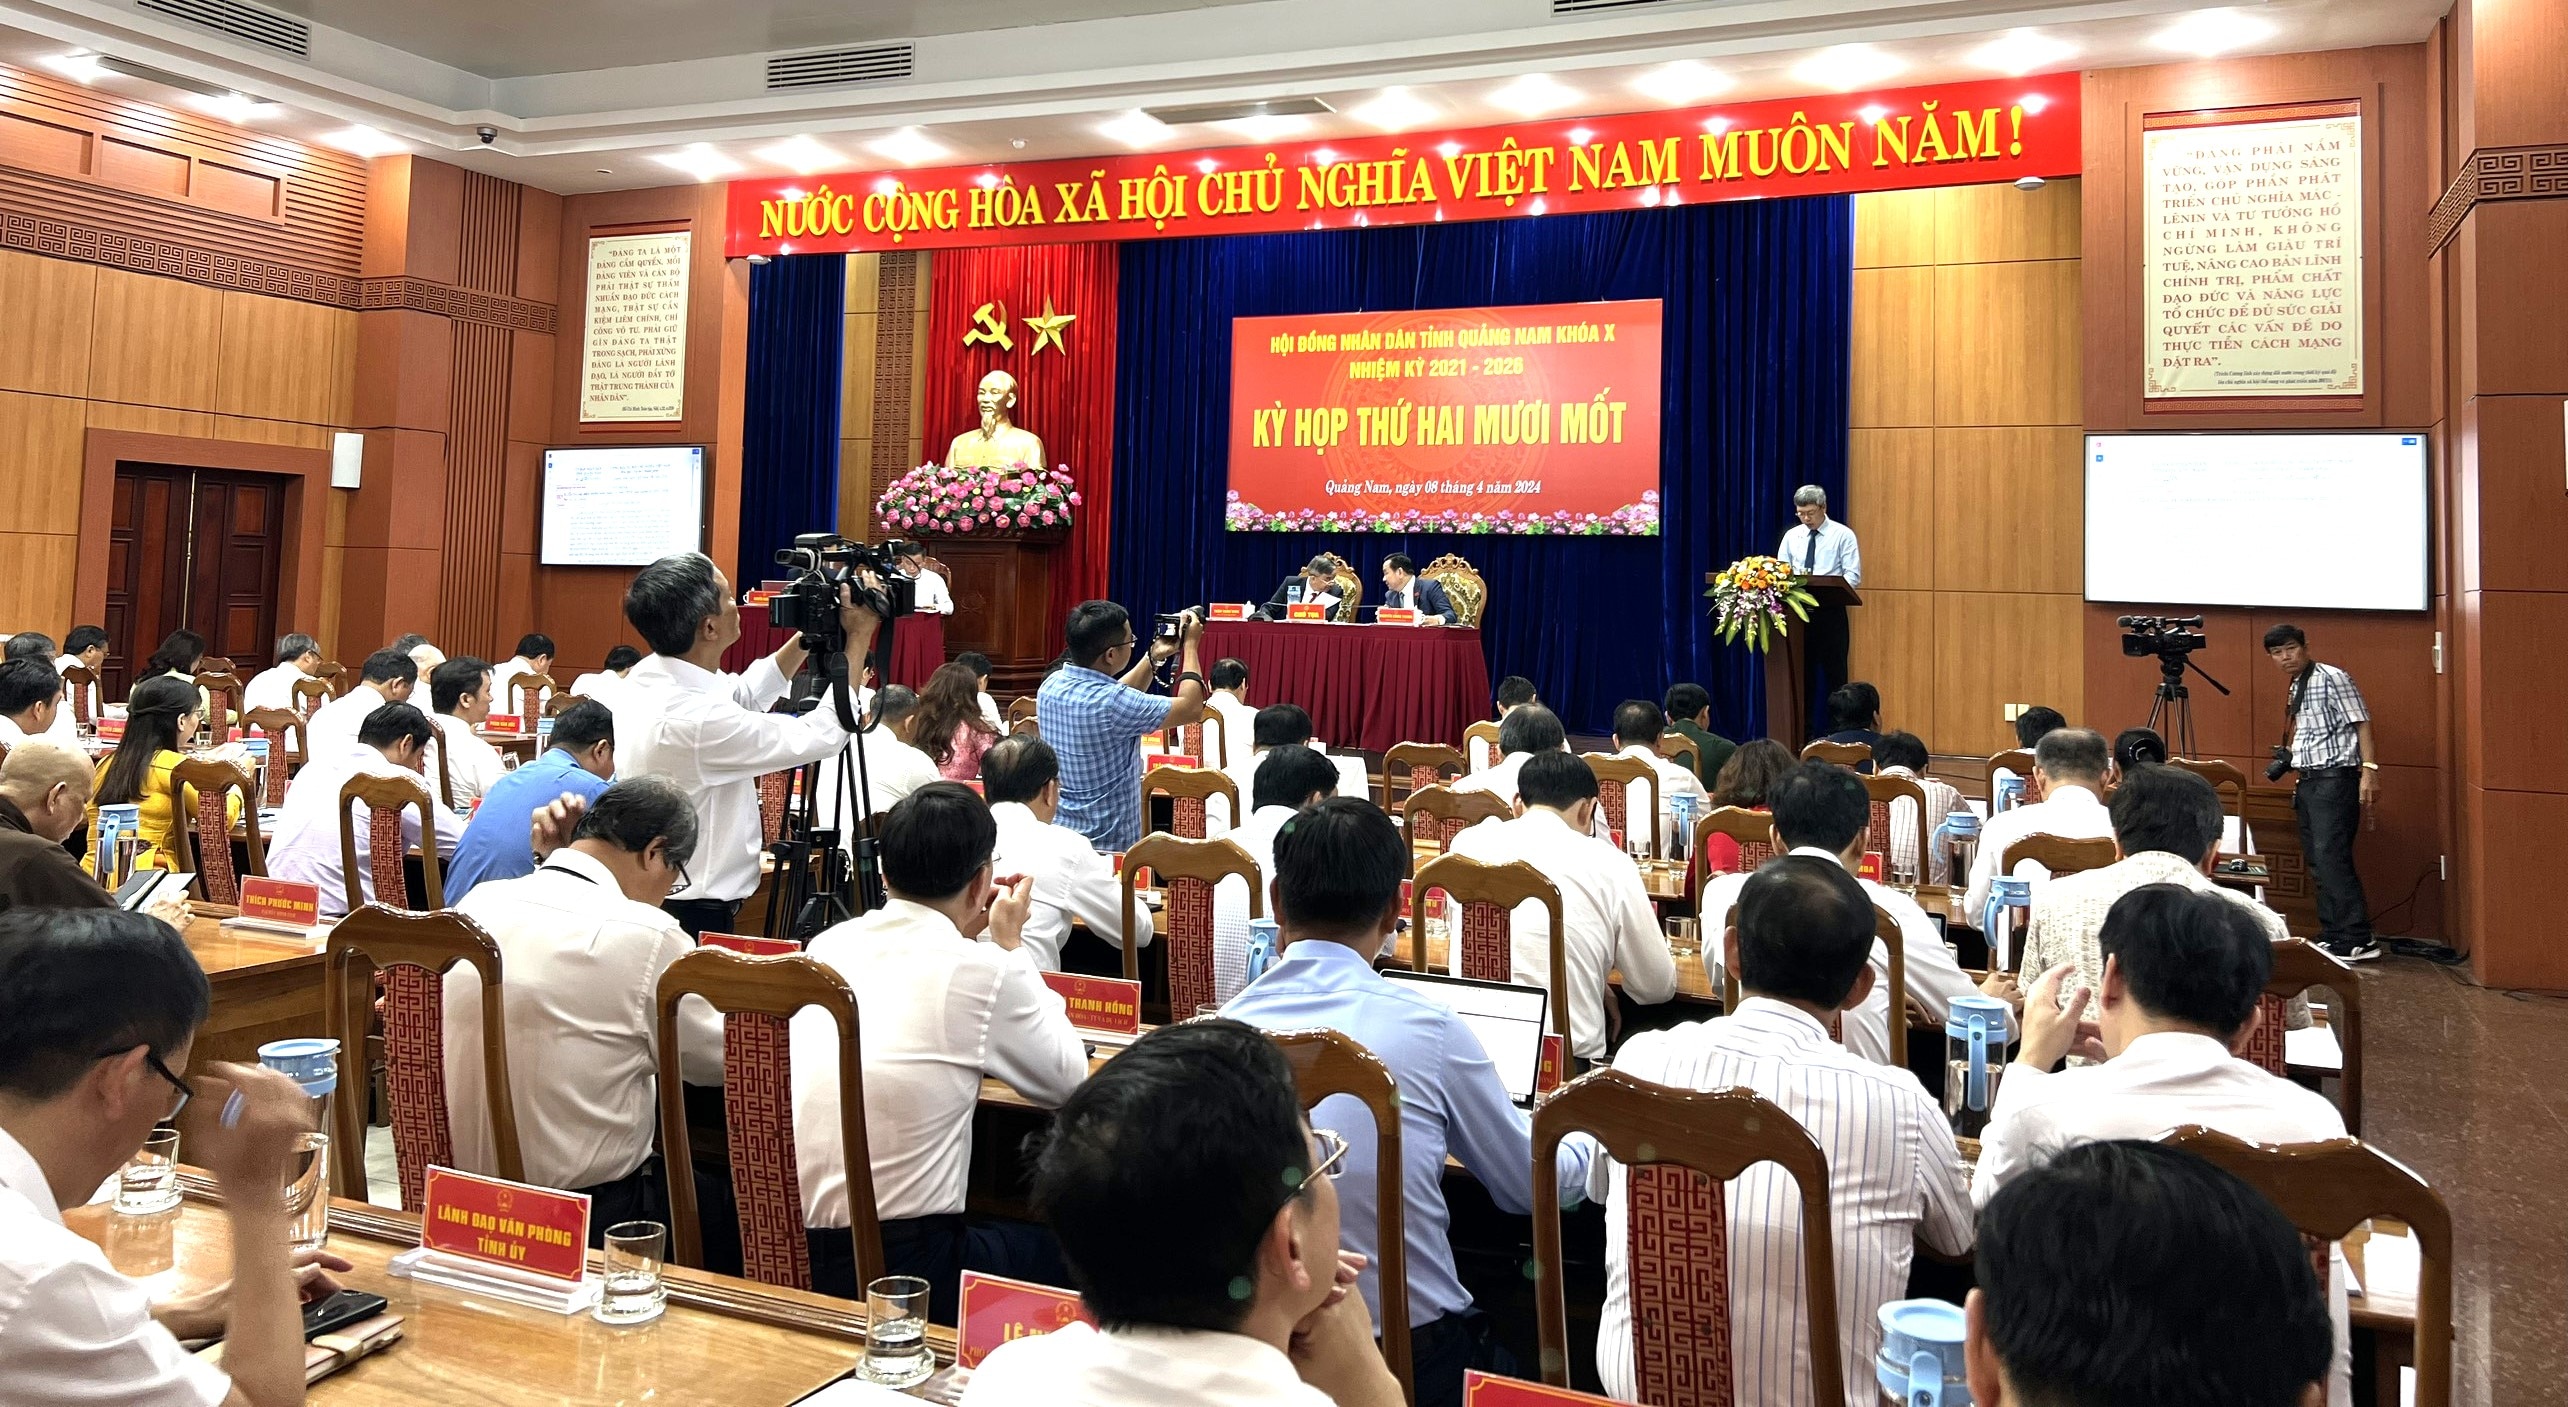 Sự kiện - Thống nhất miễn nhiệm Chủ tịch UBND tỉnh Quảng Nam đối với ông Lê Trí Thanh (Hình 2).